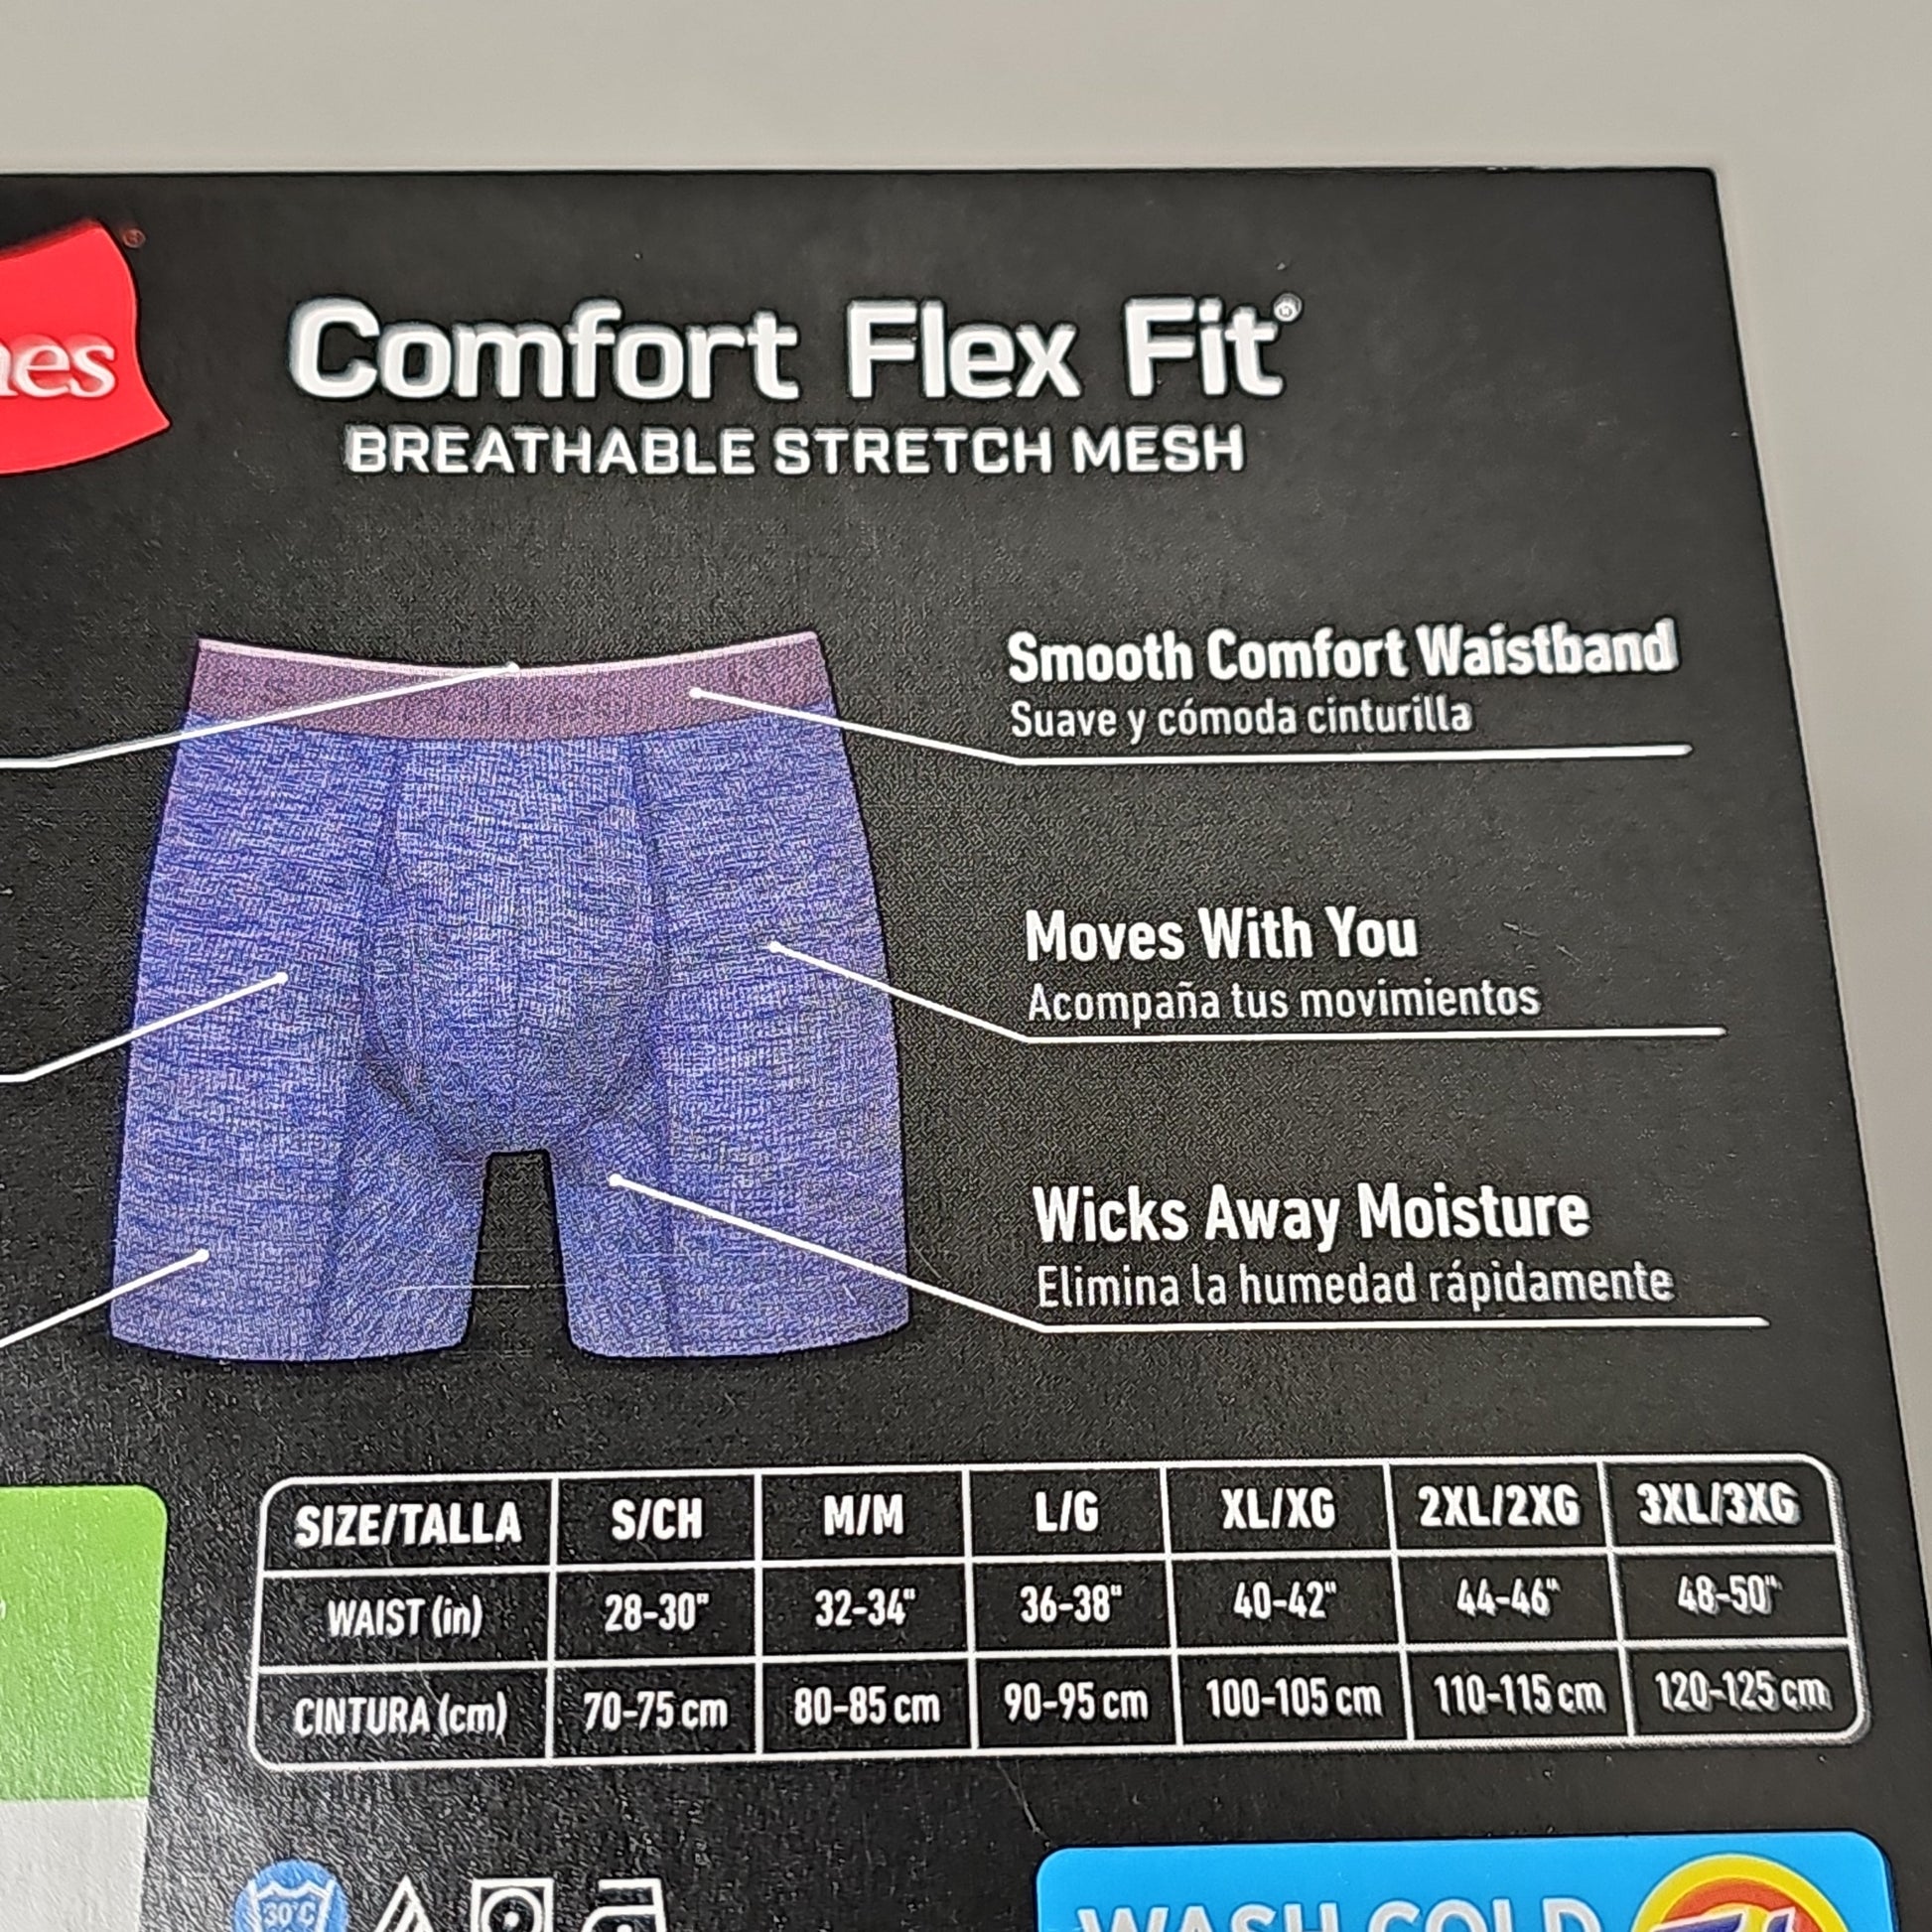 HANES Tagless Boxer Briefs Men's Size M 32-34 3-Pk Comfort Flex Fit S –  PayWut